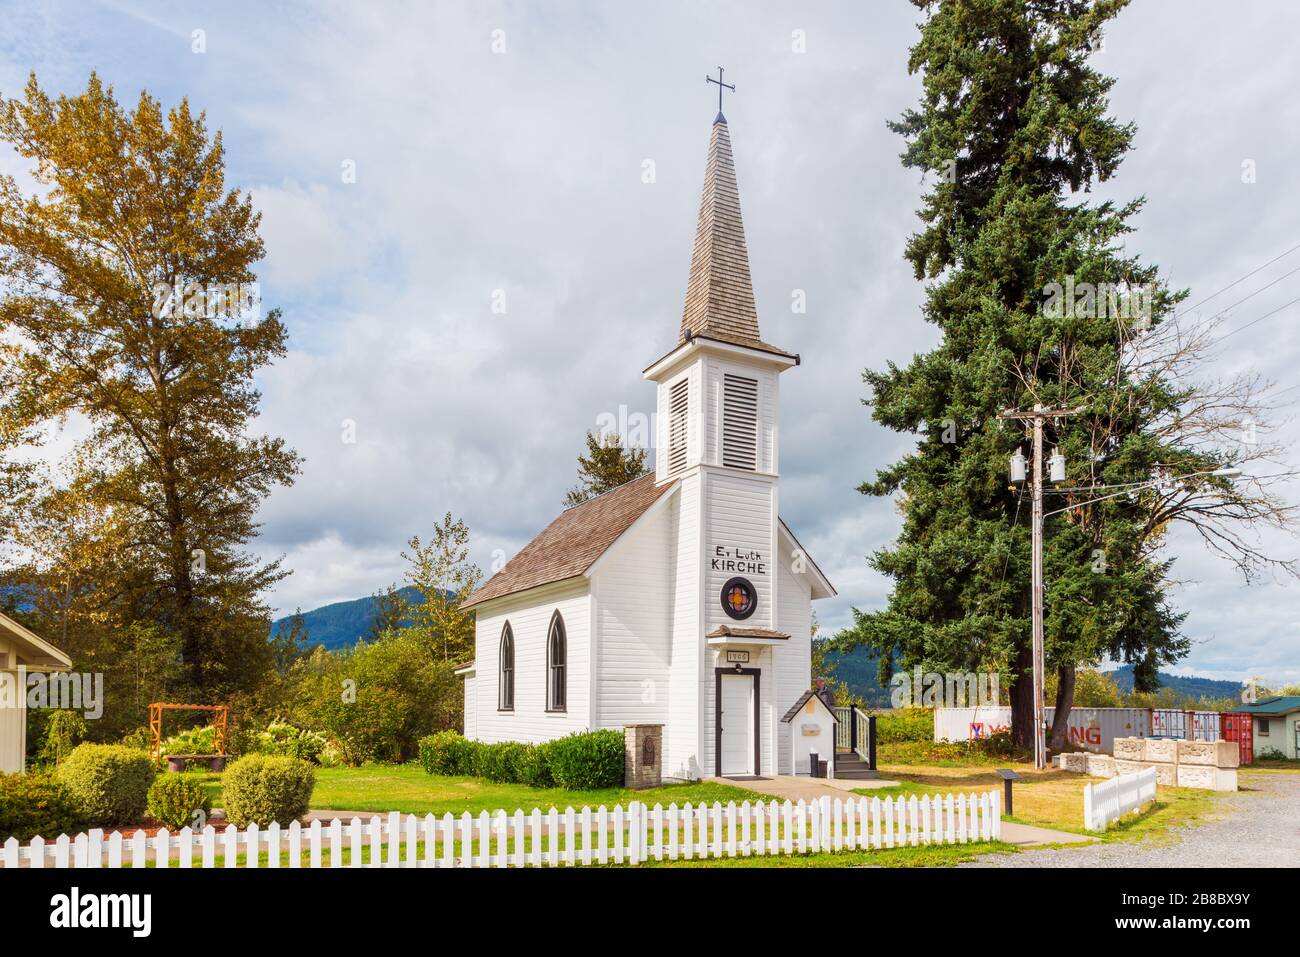 La Chiesa evangelica luterana dell'Elba, costruita nel 1906 dagli immigrati tedeschi che hanno fondato la comunità. Foto Stock